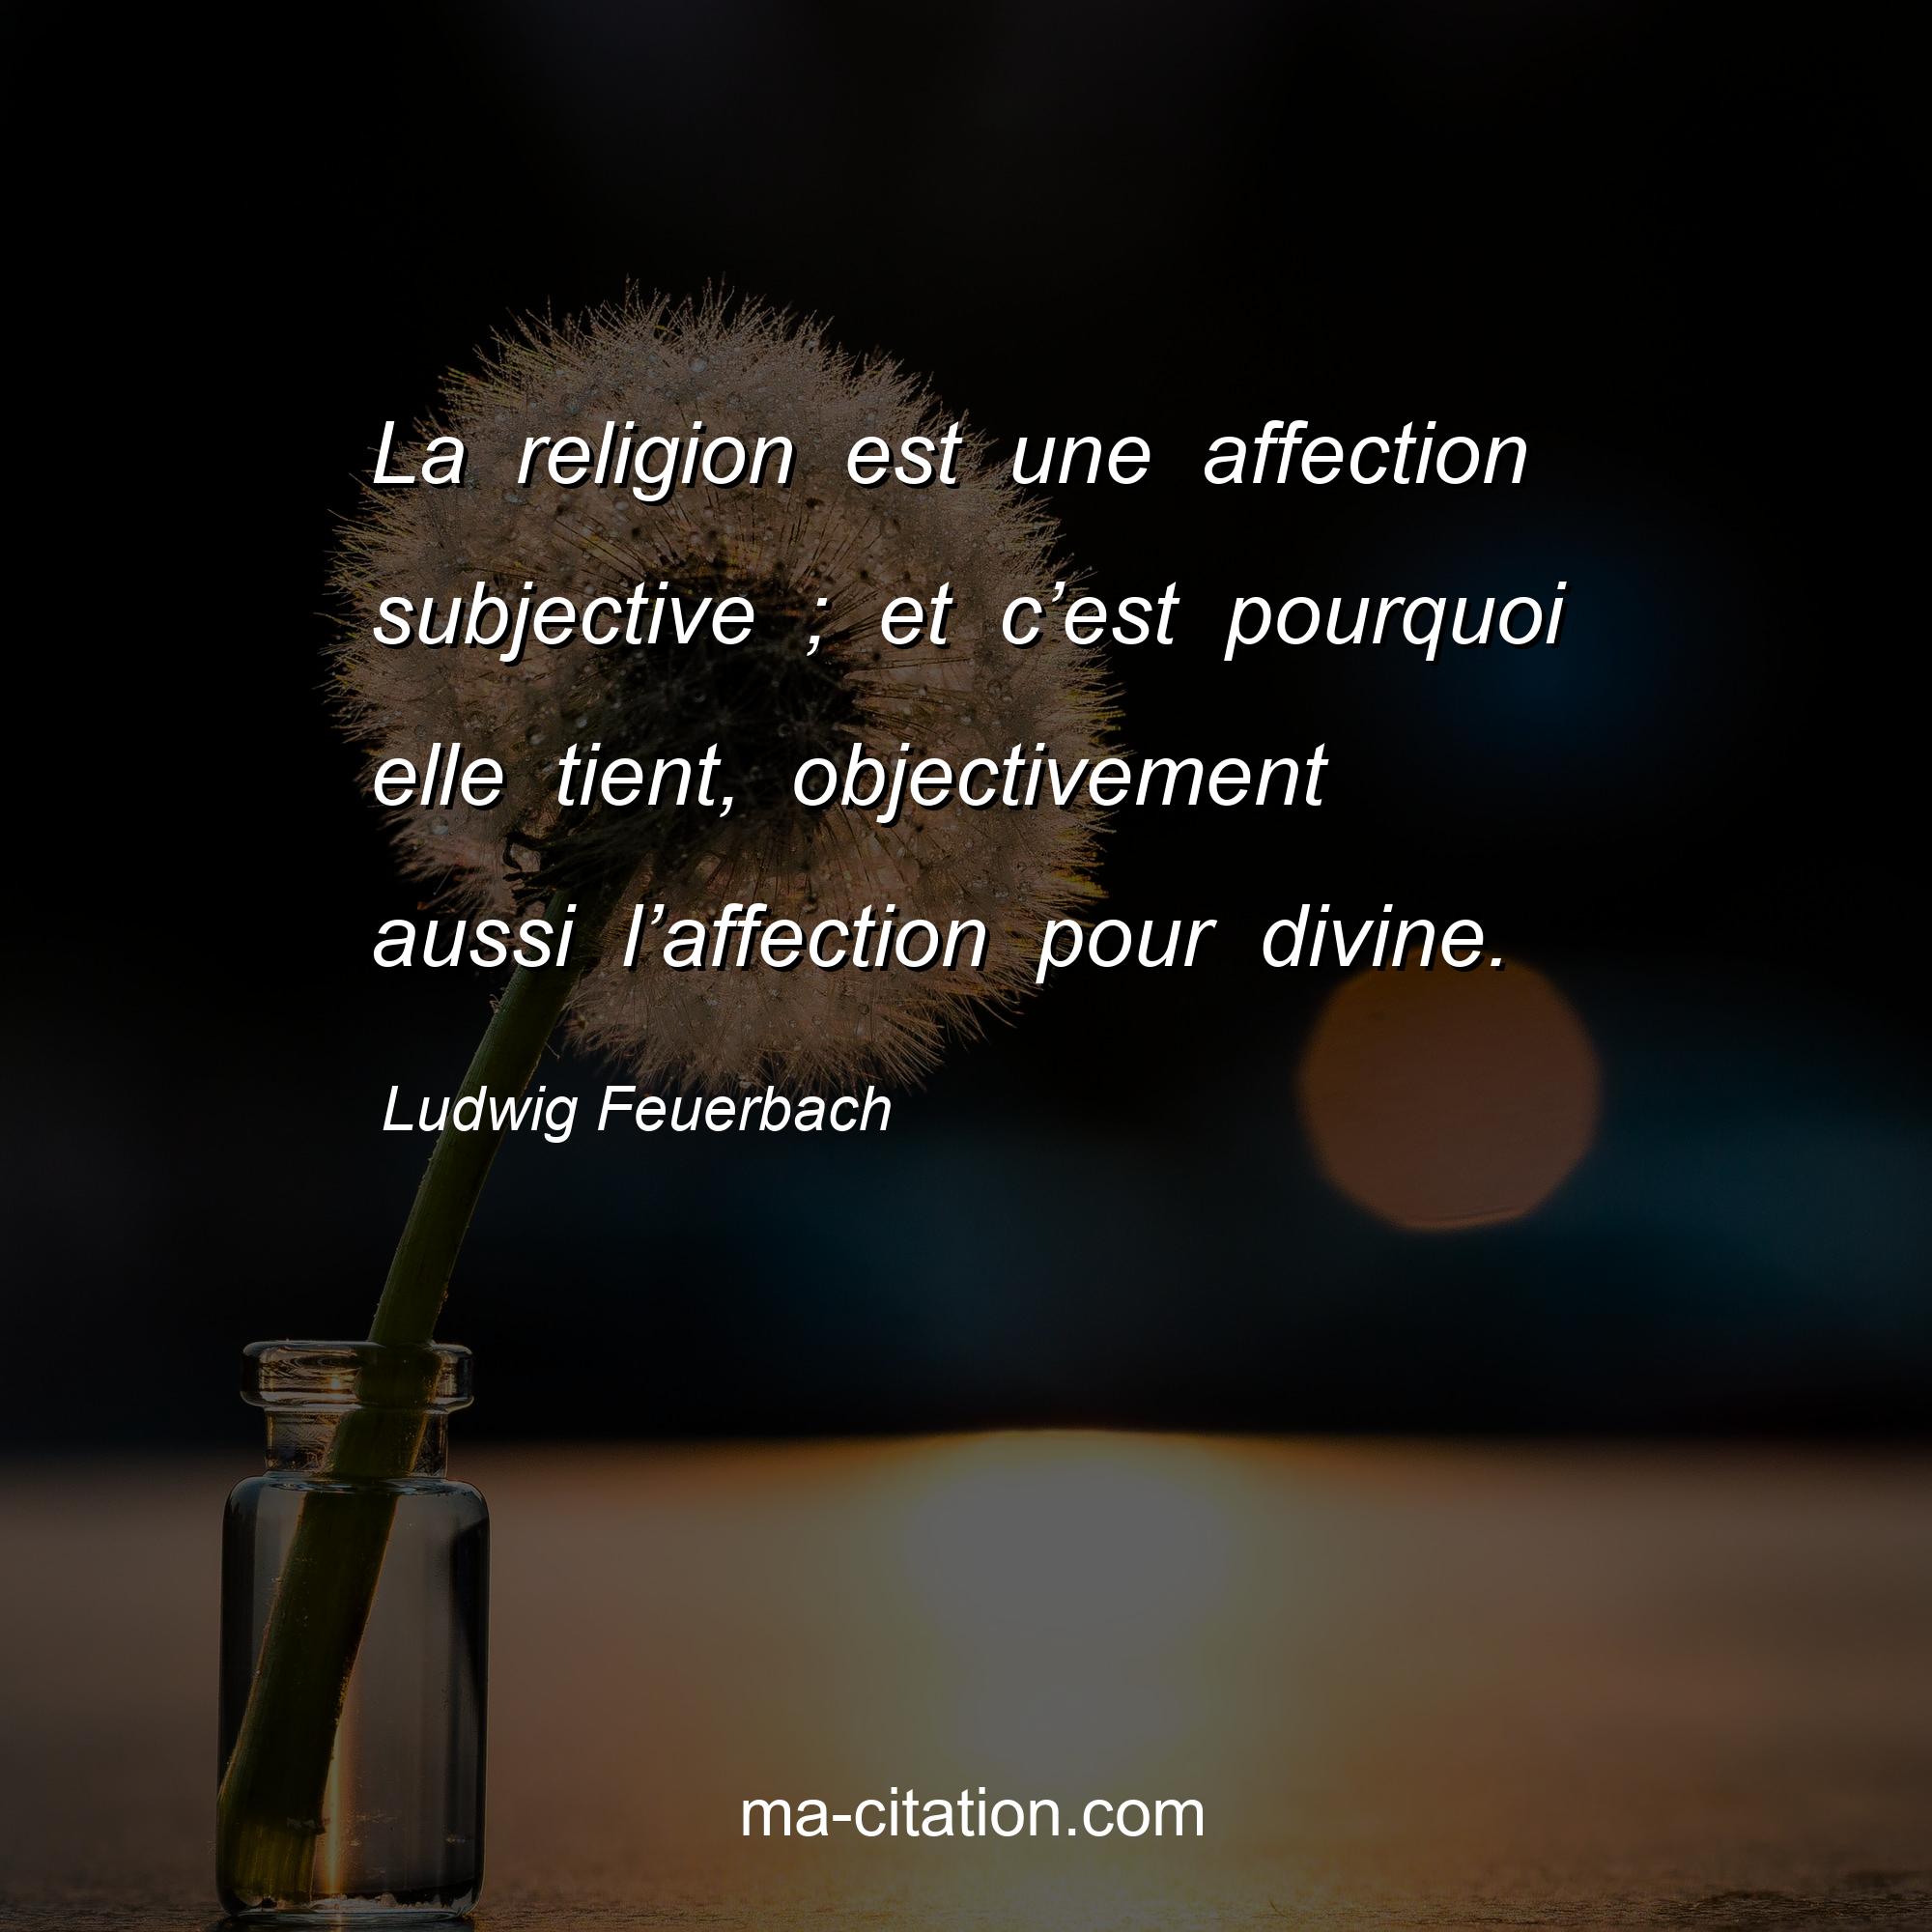 Ludwig Feuerbach : La religion est une affection subjective ; et c’est pourquoi elle tient, objectivement aussi l’affection pour divine.